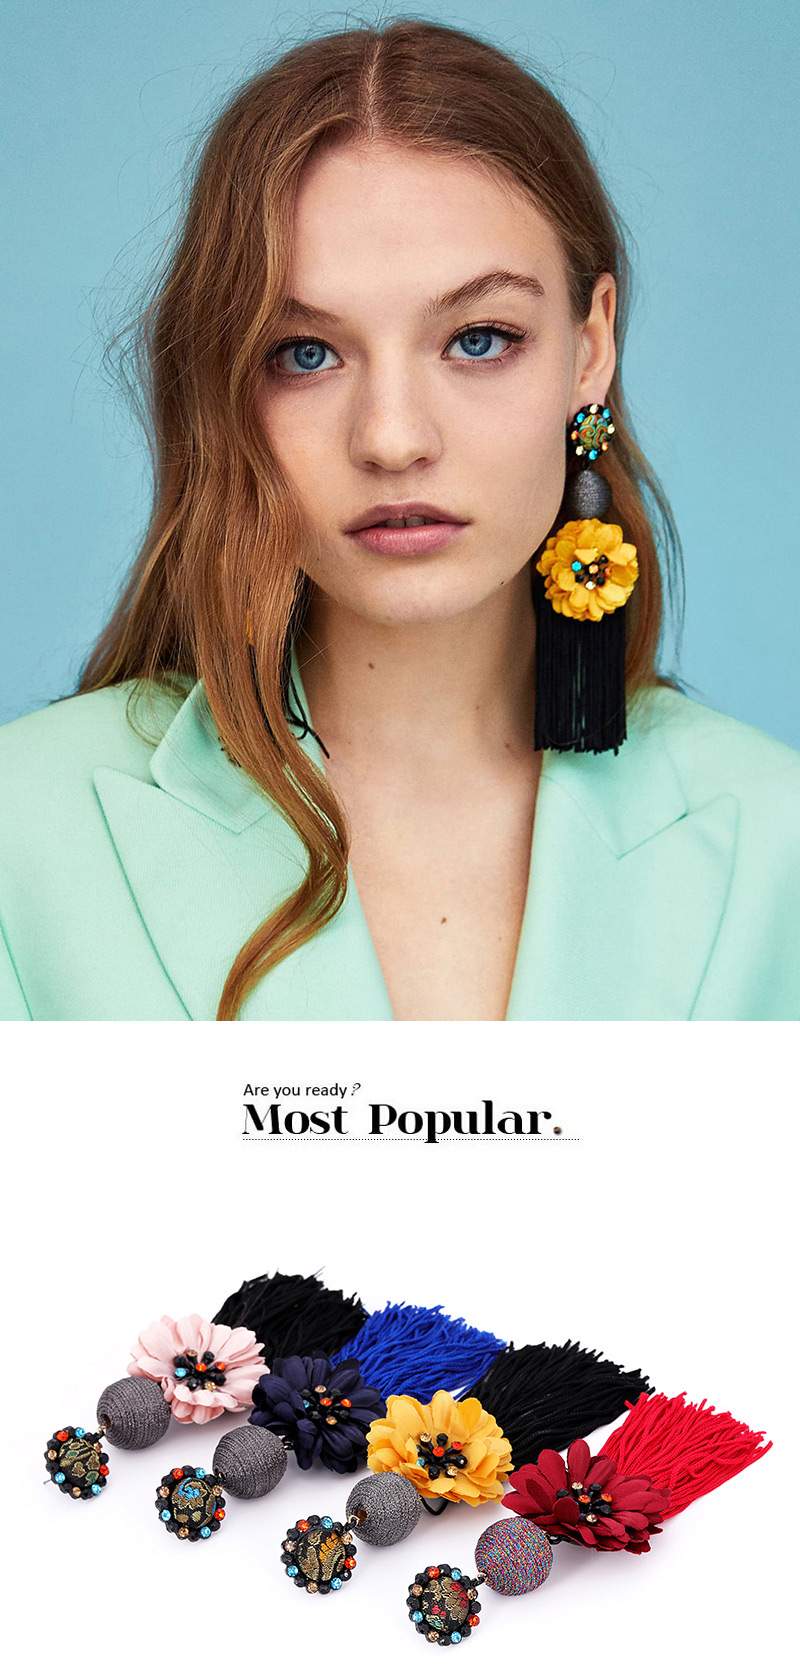 Fashion Navy Flower Shape Decorated Tassel Earrings,Drop Earrings